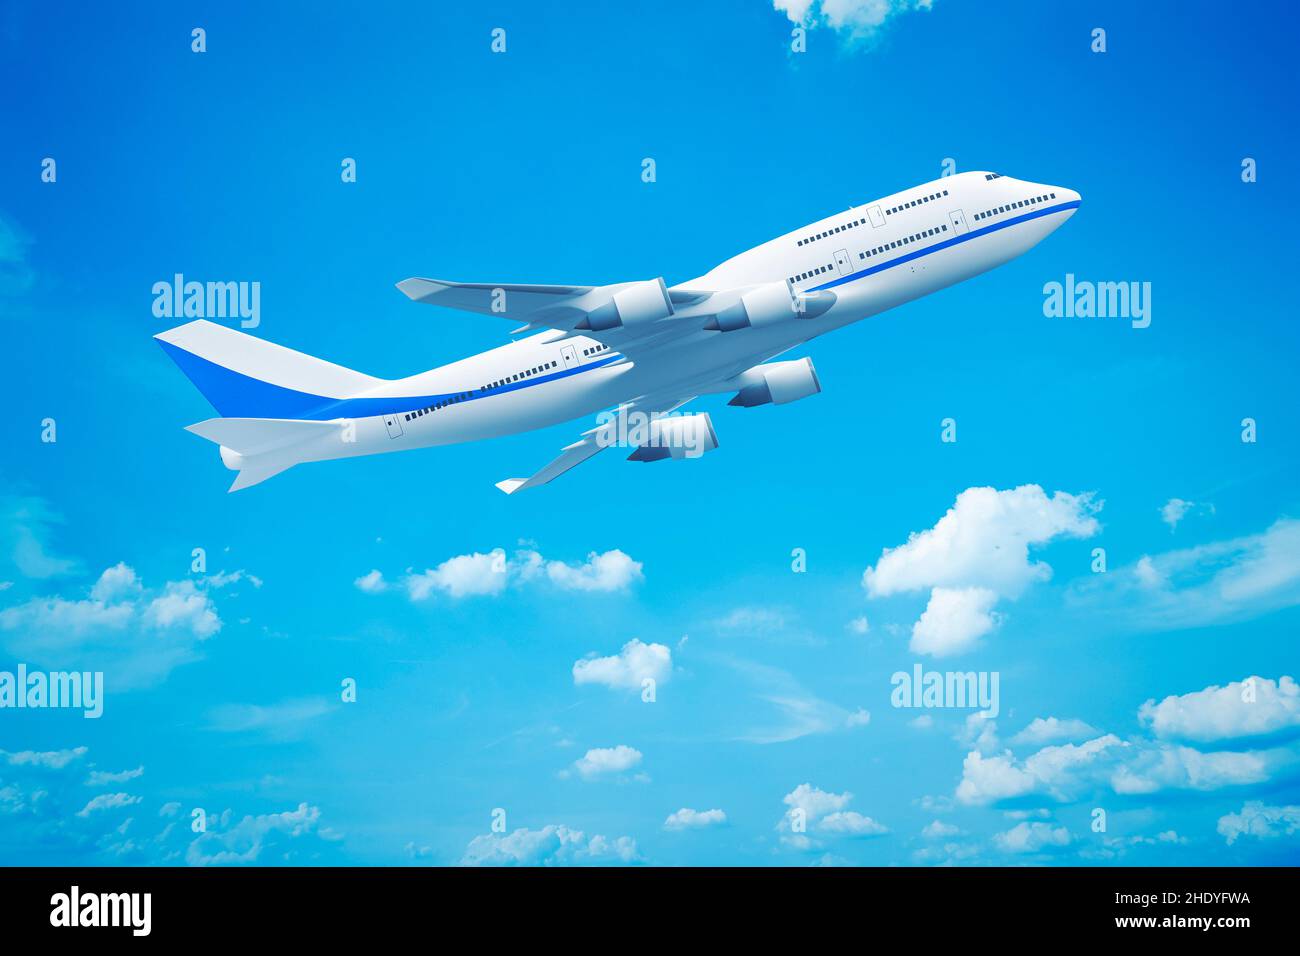 aeroplano, volo, volo, velivolo commerciale, aeroplani, aereo, aerei, volare, volare, voli, aerei commerciali Foto Stock